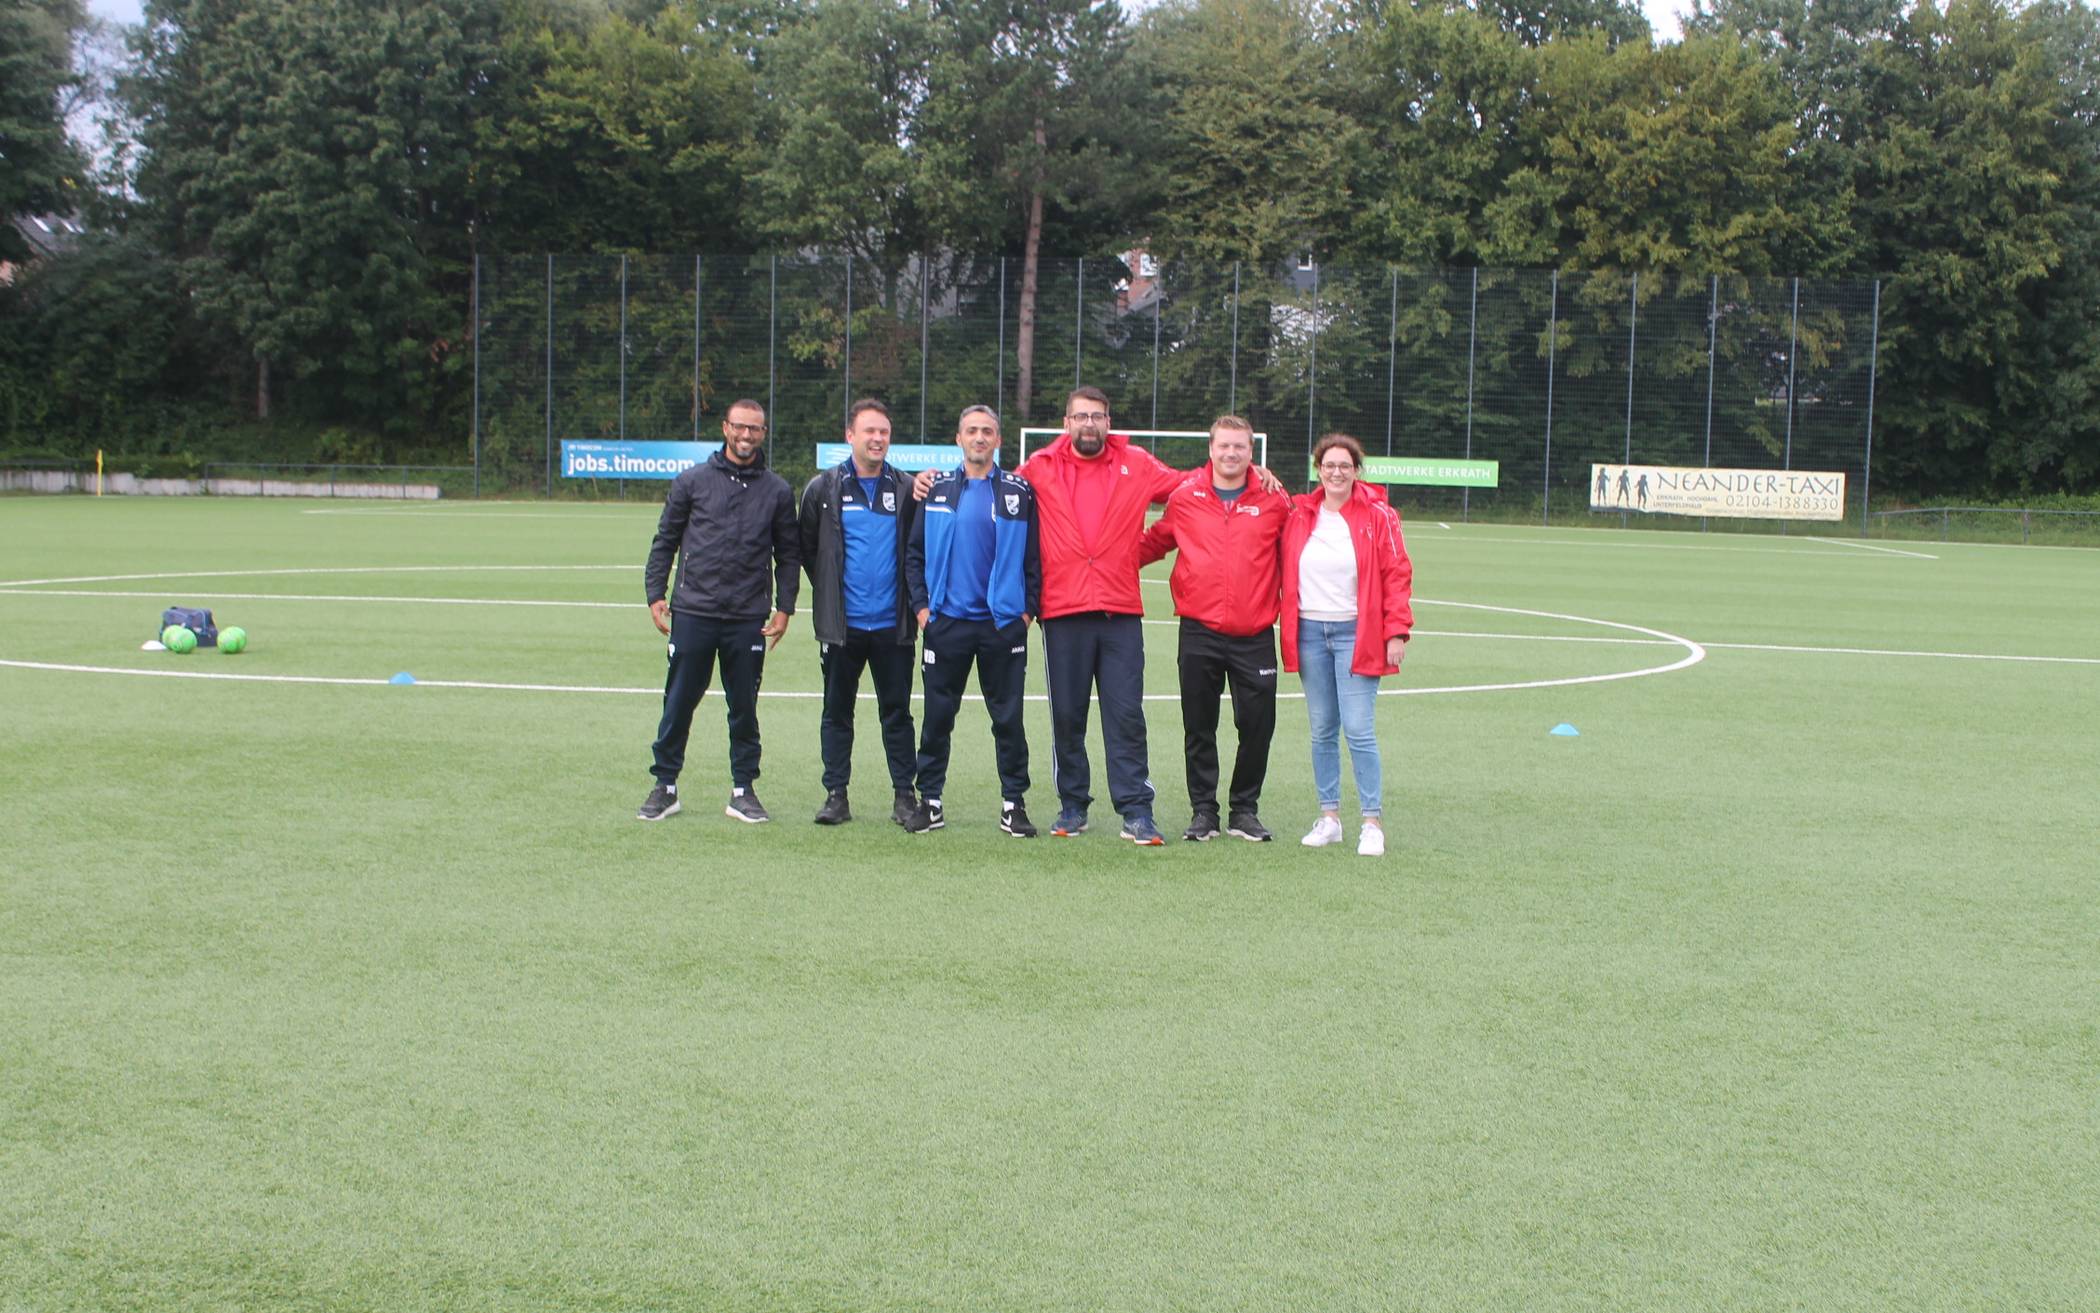  Gemeinsam stark, die Trainer der F-Jugend von Rhenania Hochdahl und vom SSV Erkrath. 
  